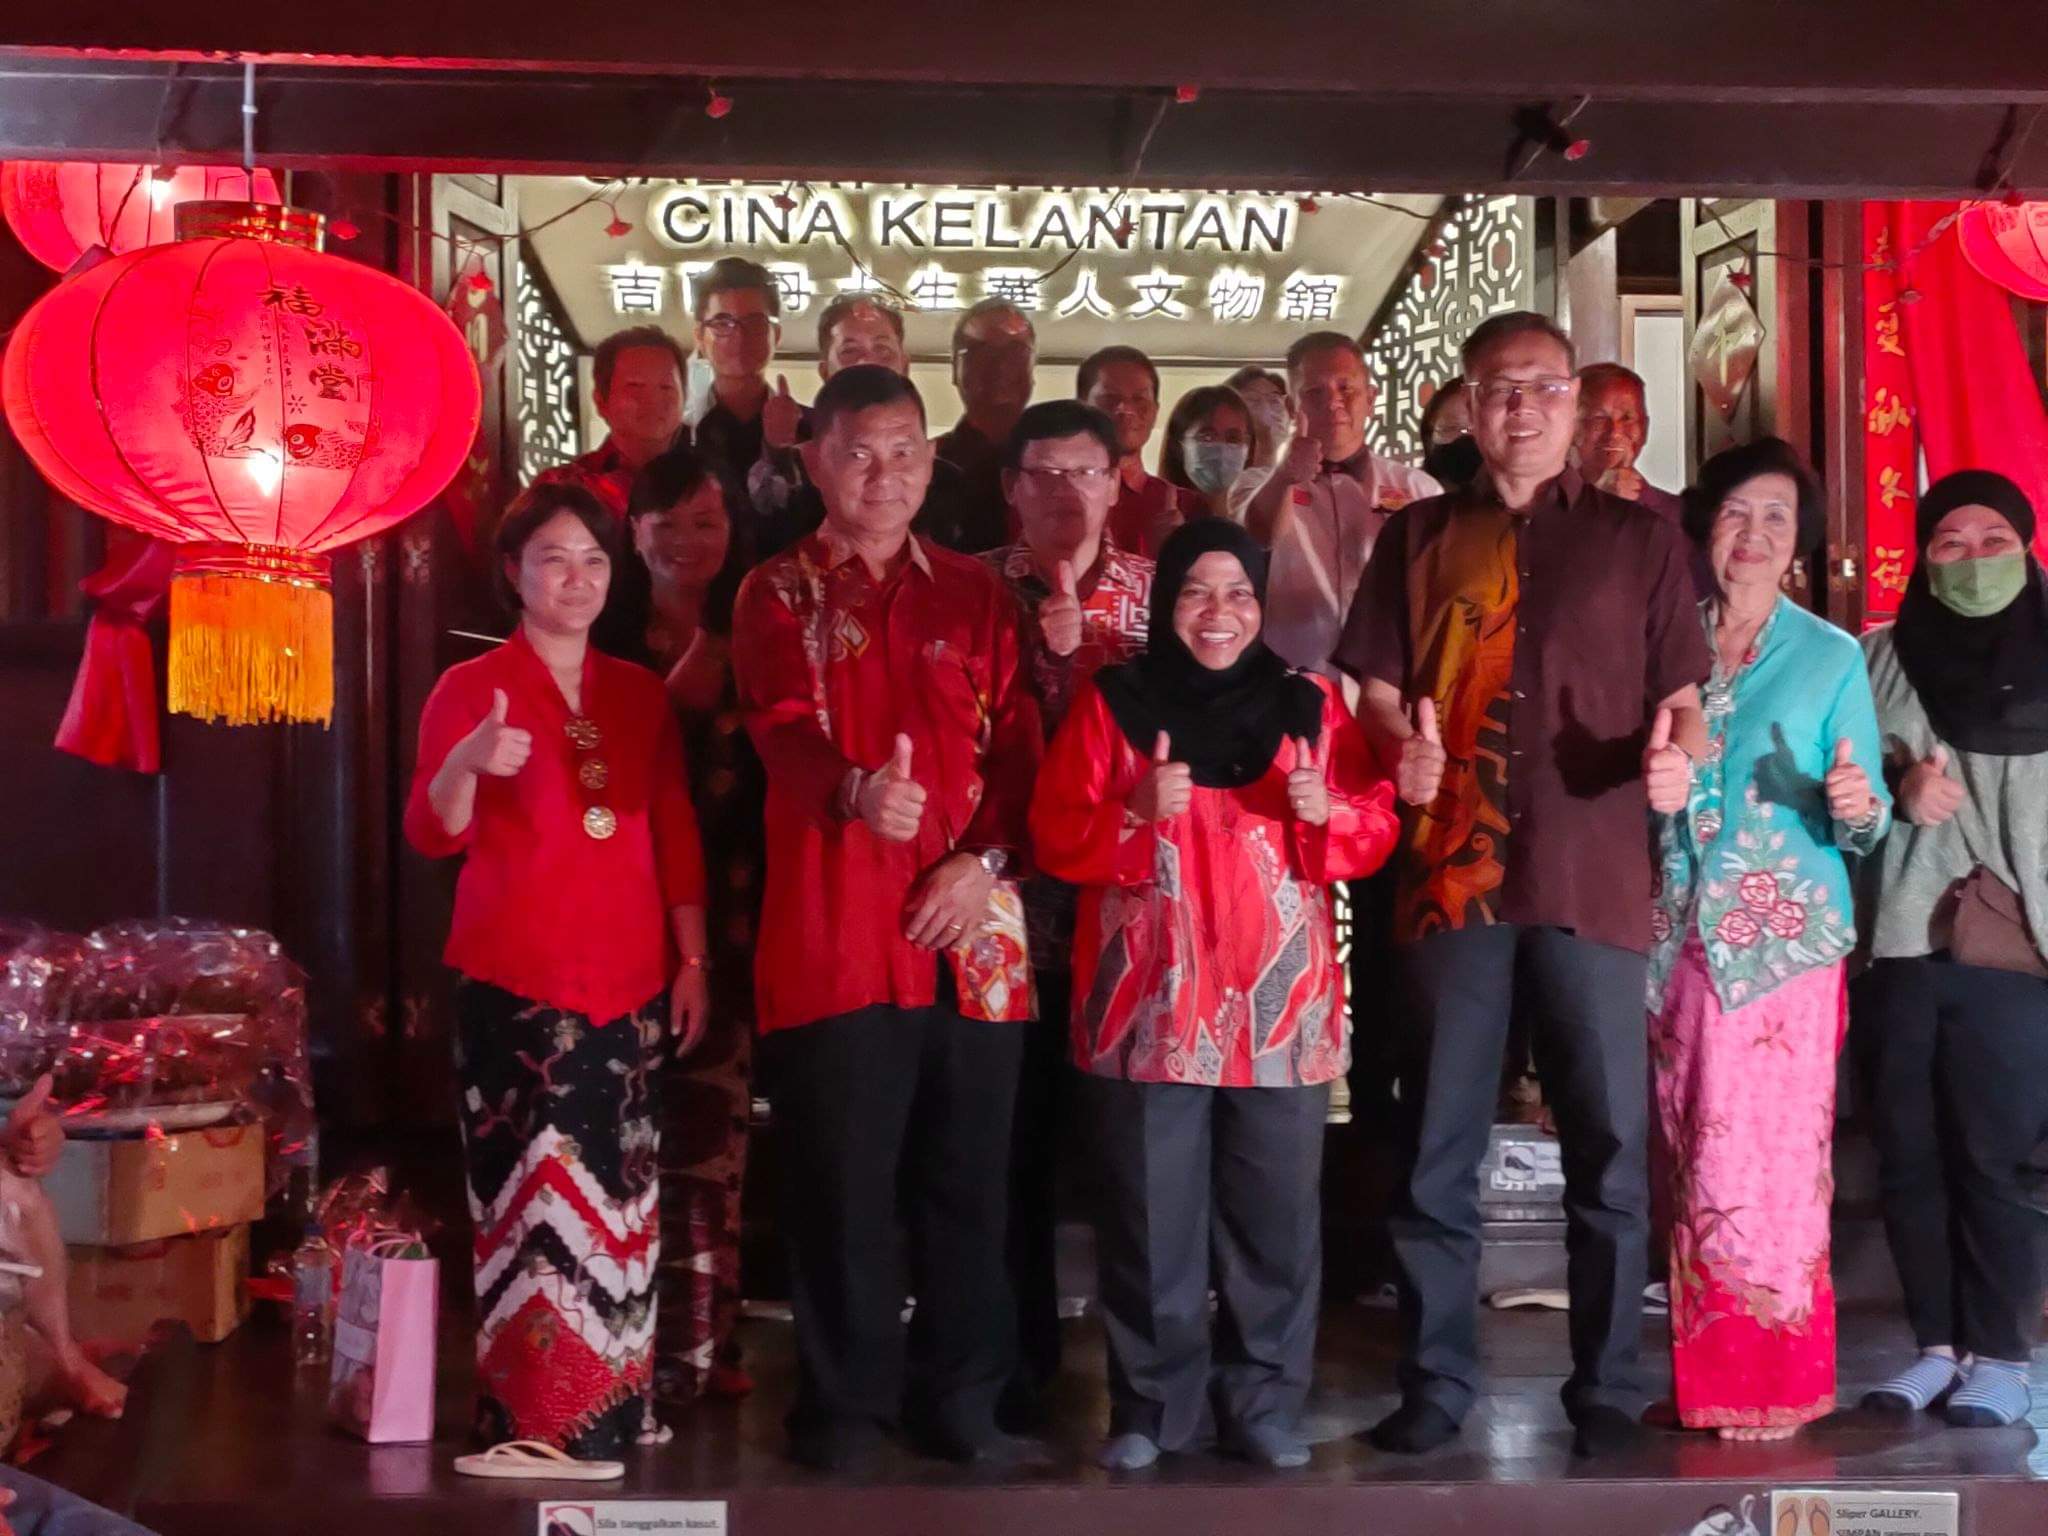 东：吉兰丹土生华裔协会举办“传统文艺嘉年华会”，让民众对土生华人有更深一层的认识。